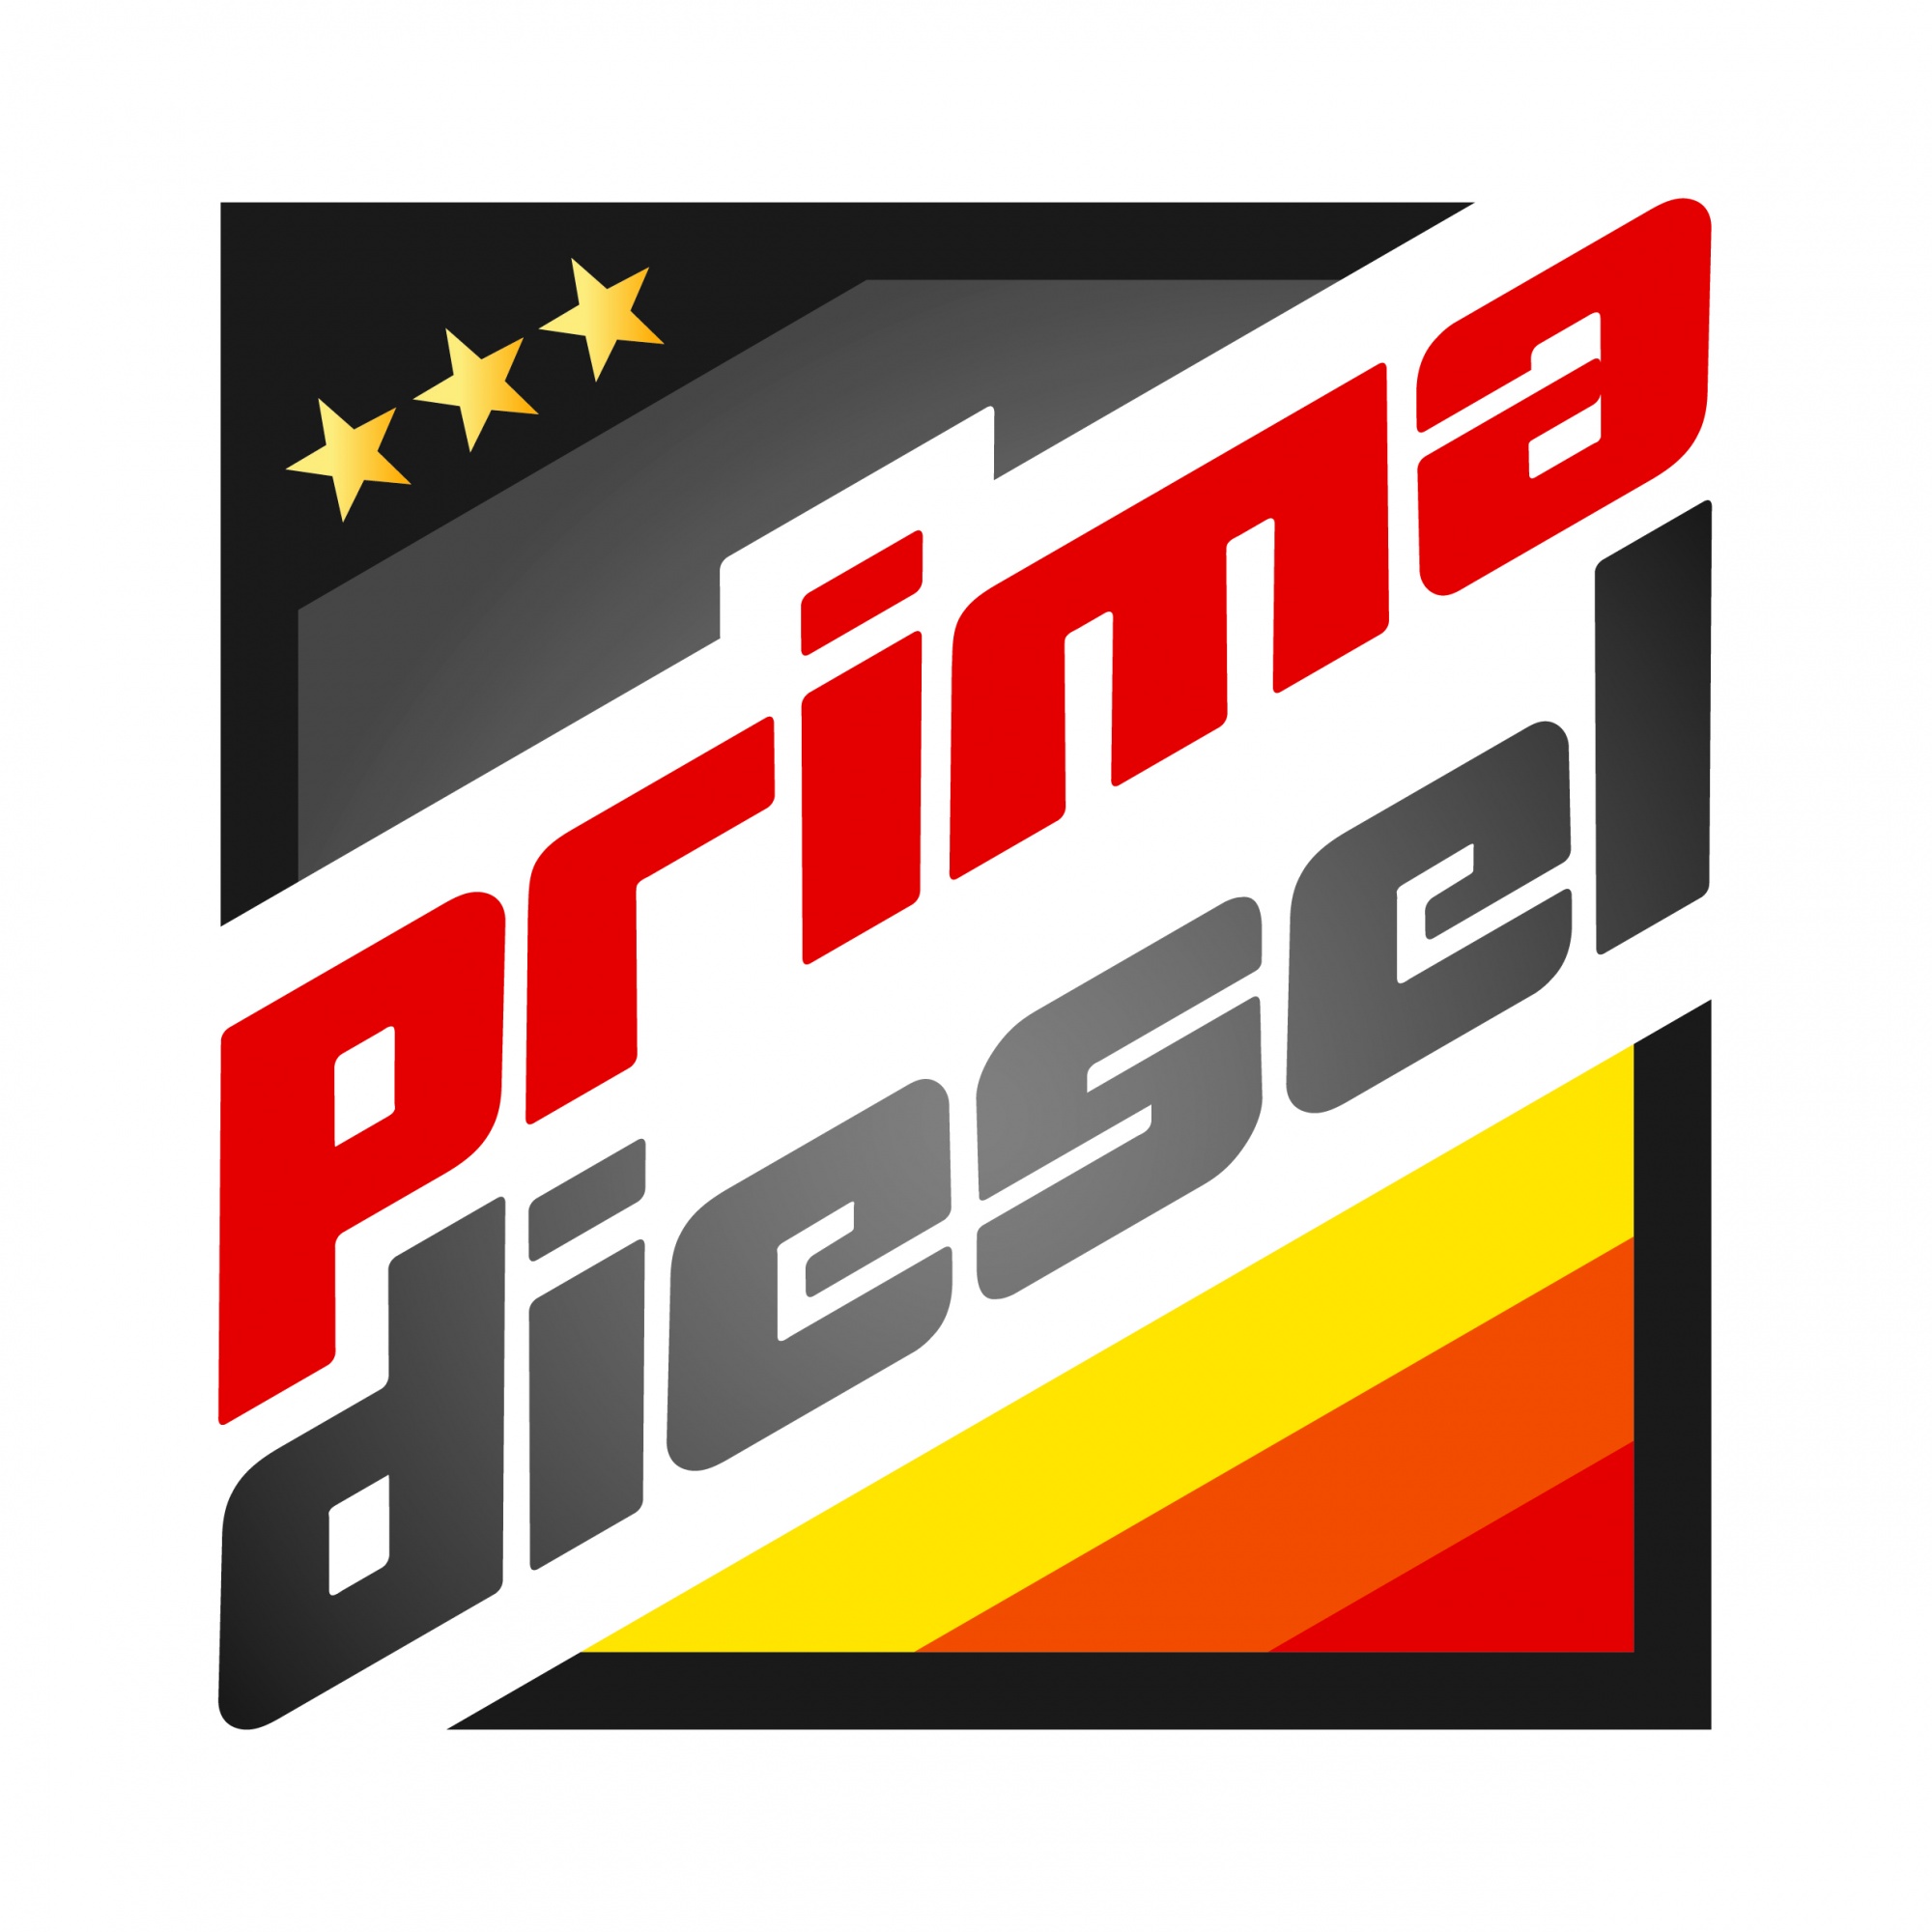 Marke Primadiesel, Kraftstoff, erhältlich an Tankstellen